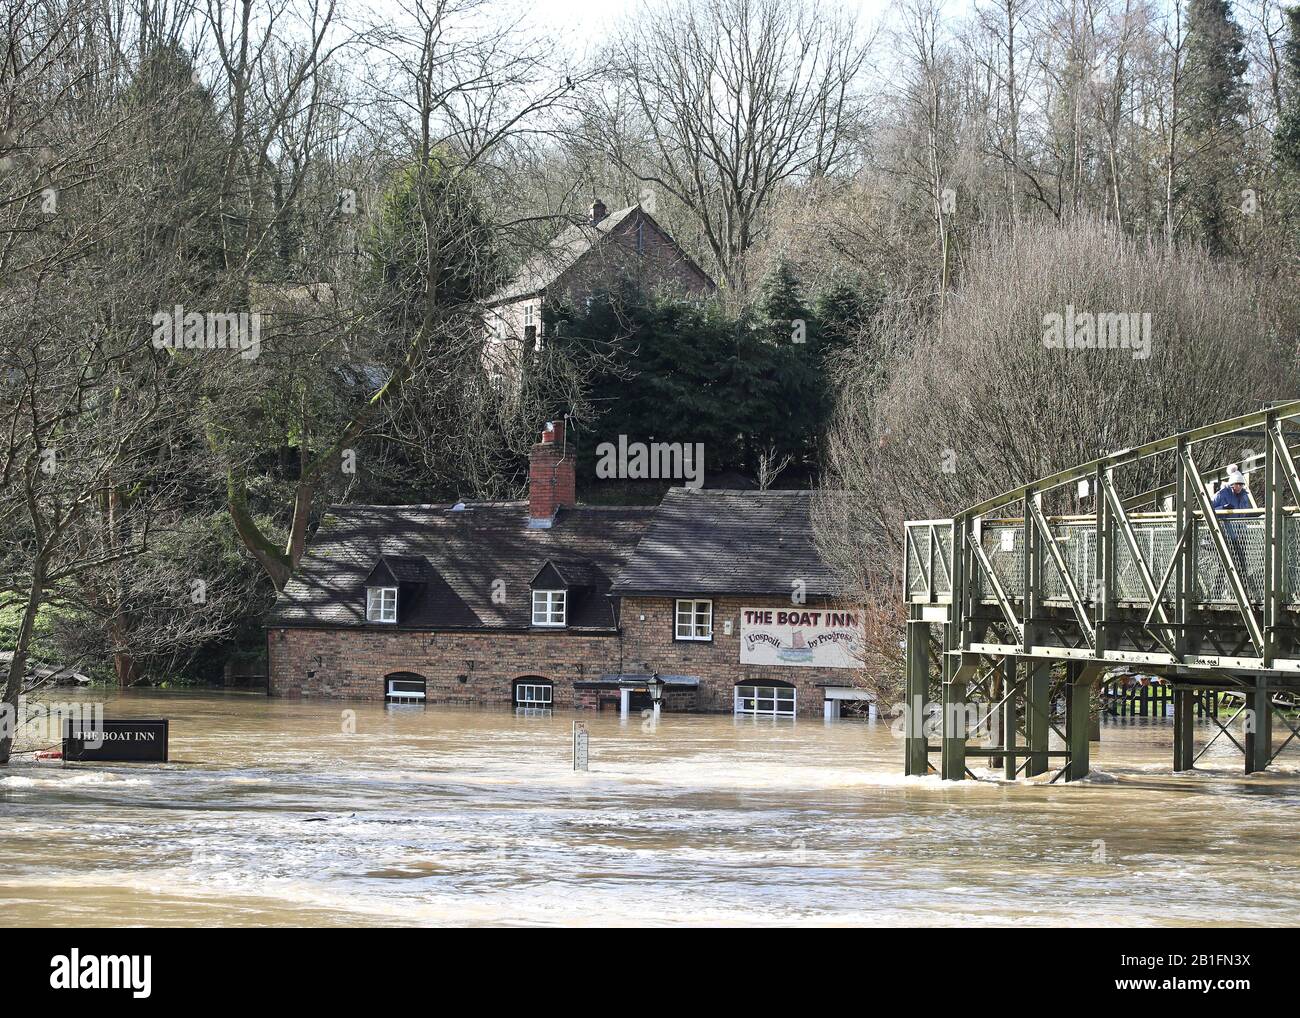 Das Boat Inn in Jackfield in der Nähe von Ironbridge, Shropshire, Floodwaters hat die höchsten Speicherebenen erreicht, da der River Severn weiterhin hoch ist, mit Warnungen vor weiteren Überschwemmungen über Großbritannien. Siehe PA Story WETTERSTURM. Der Fotokredit sollte lauten: Nick Potts/PA Wire Stockfoto